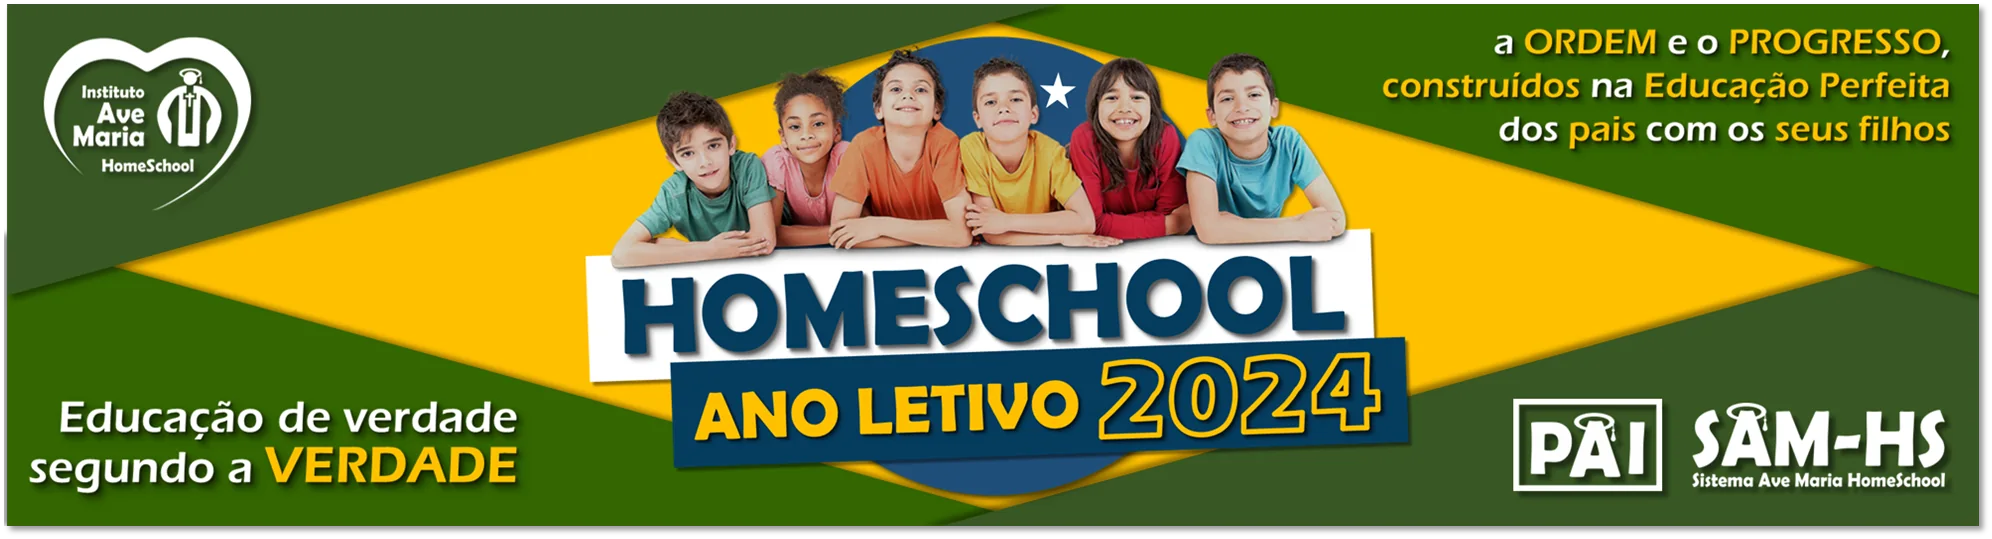 Homeschool 2024, homeschool no Brasil, homeschool e o MEC, Homeschooling, educar em casa, eucação domiciliar em casa, educando em casa